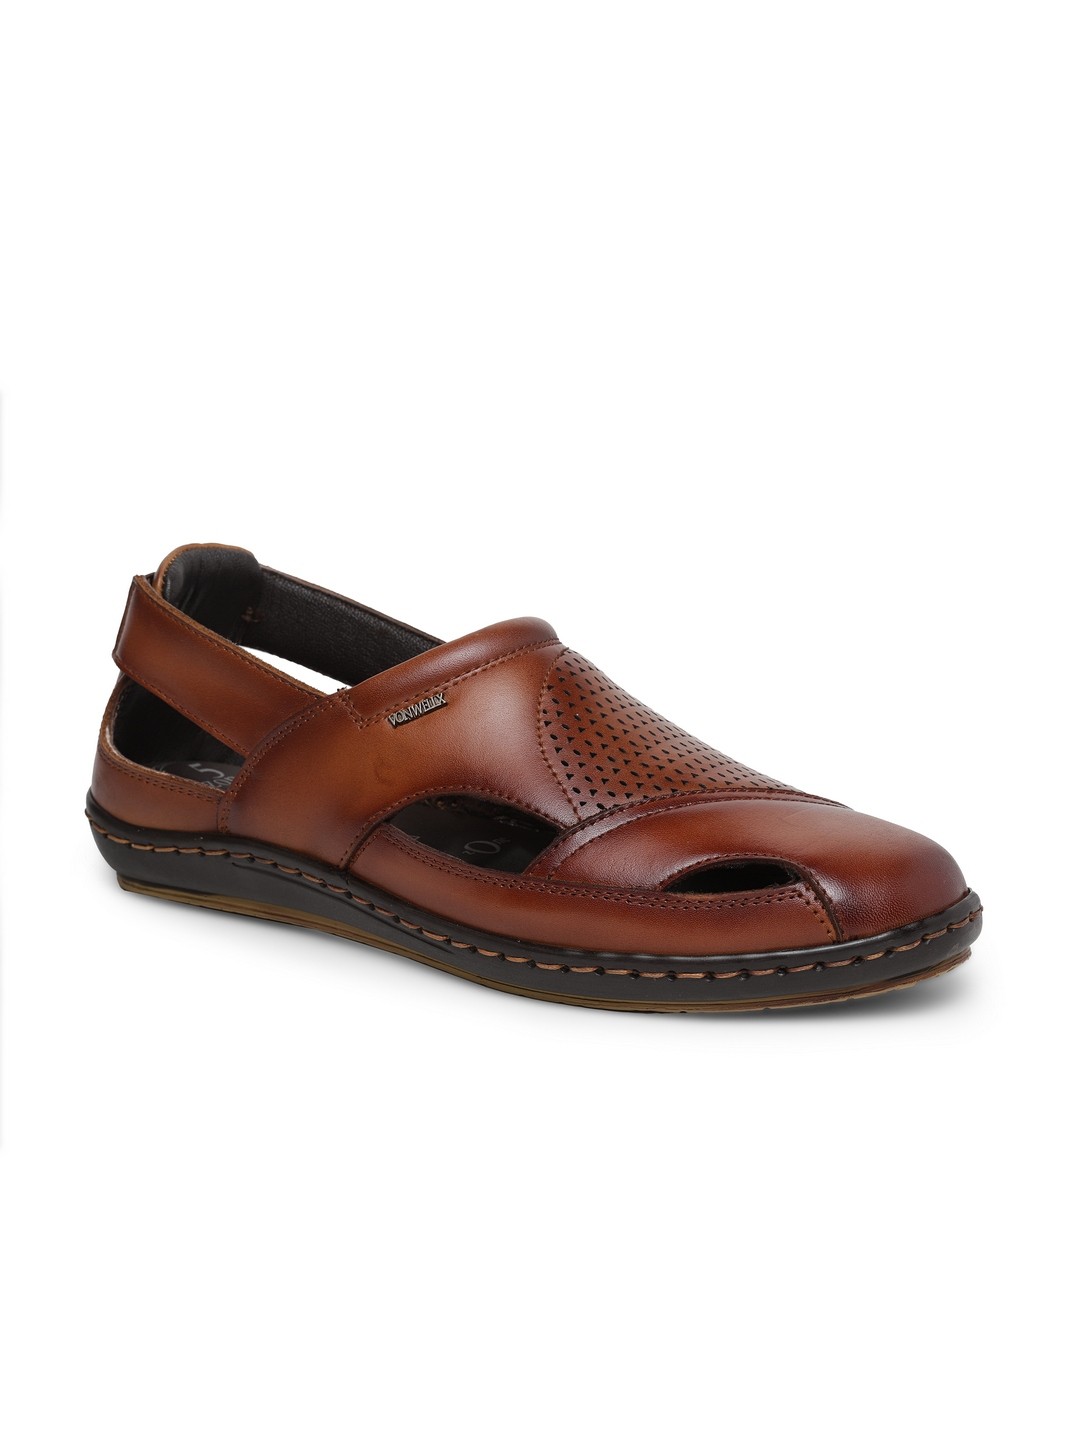 Buy Von Wellx Germany Comfort Men's Tan Sandal Eddie Online in Varanasi